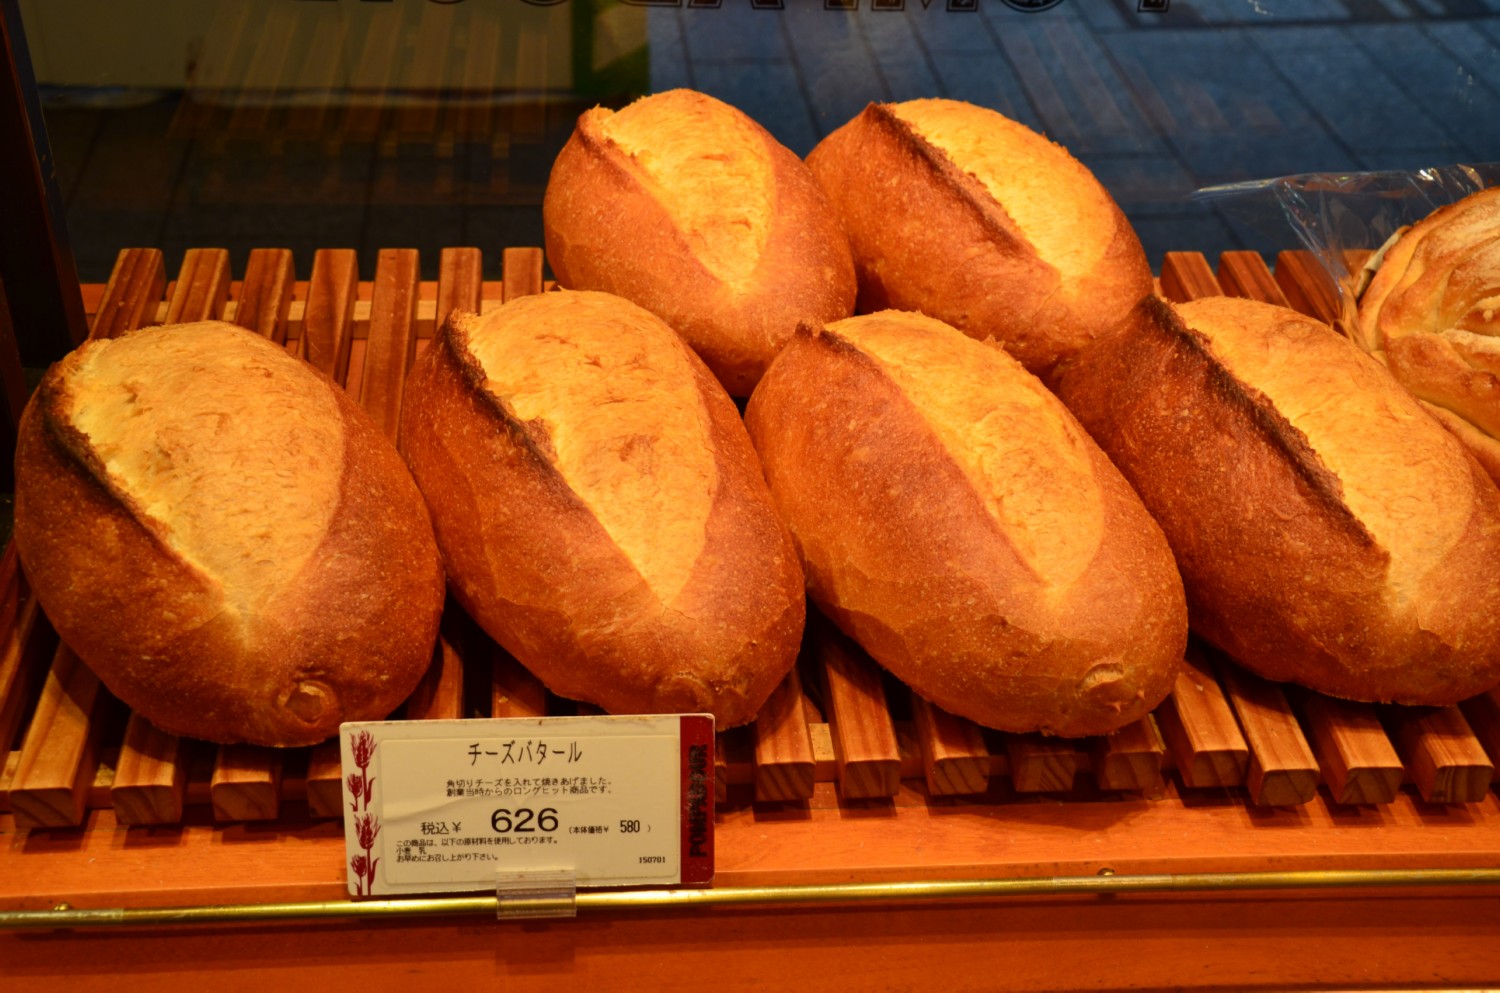 fel kg feher kenyer 5 Euro